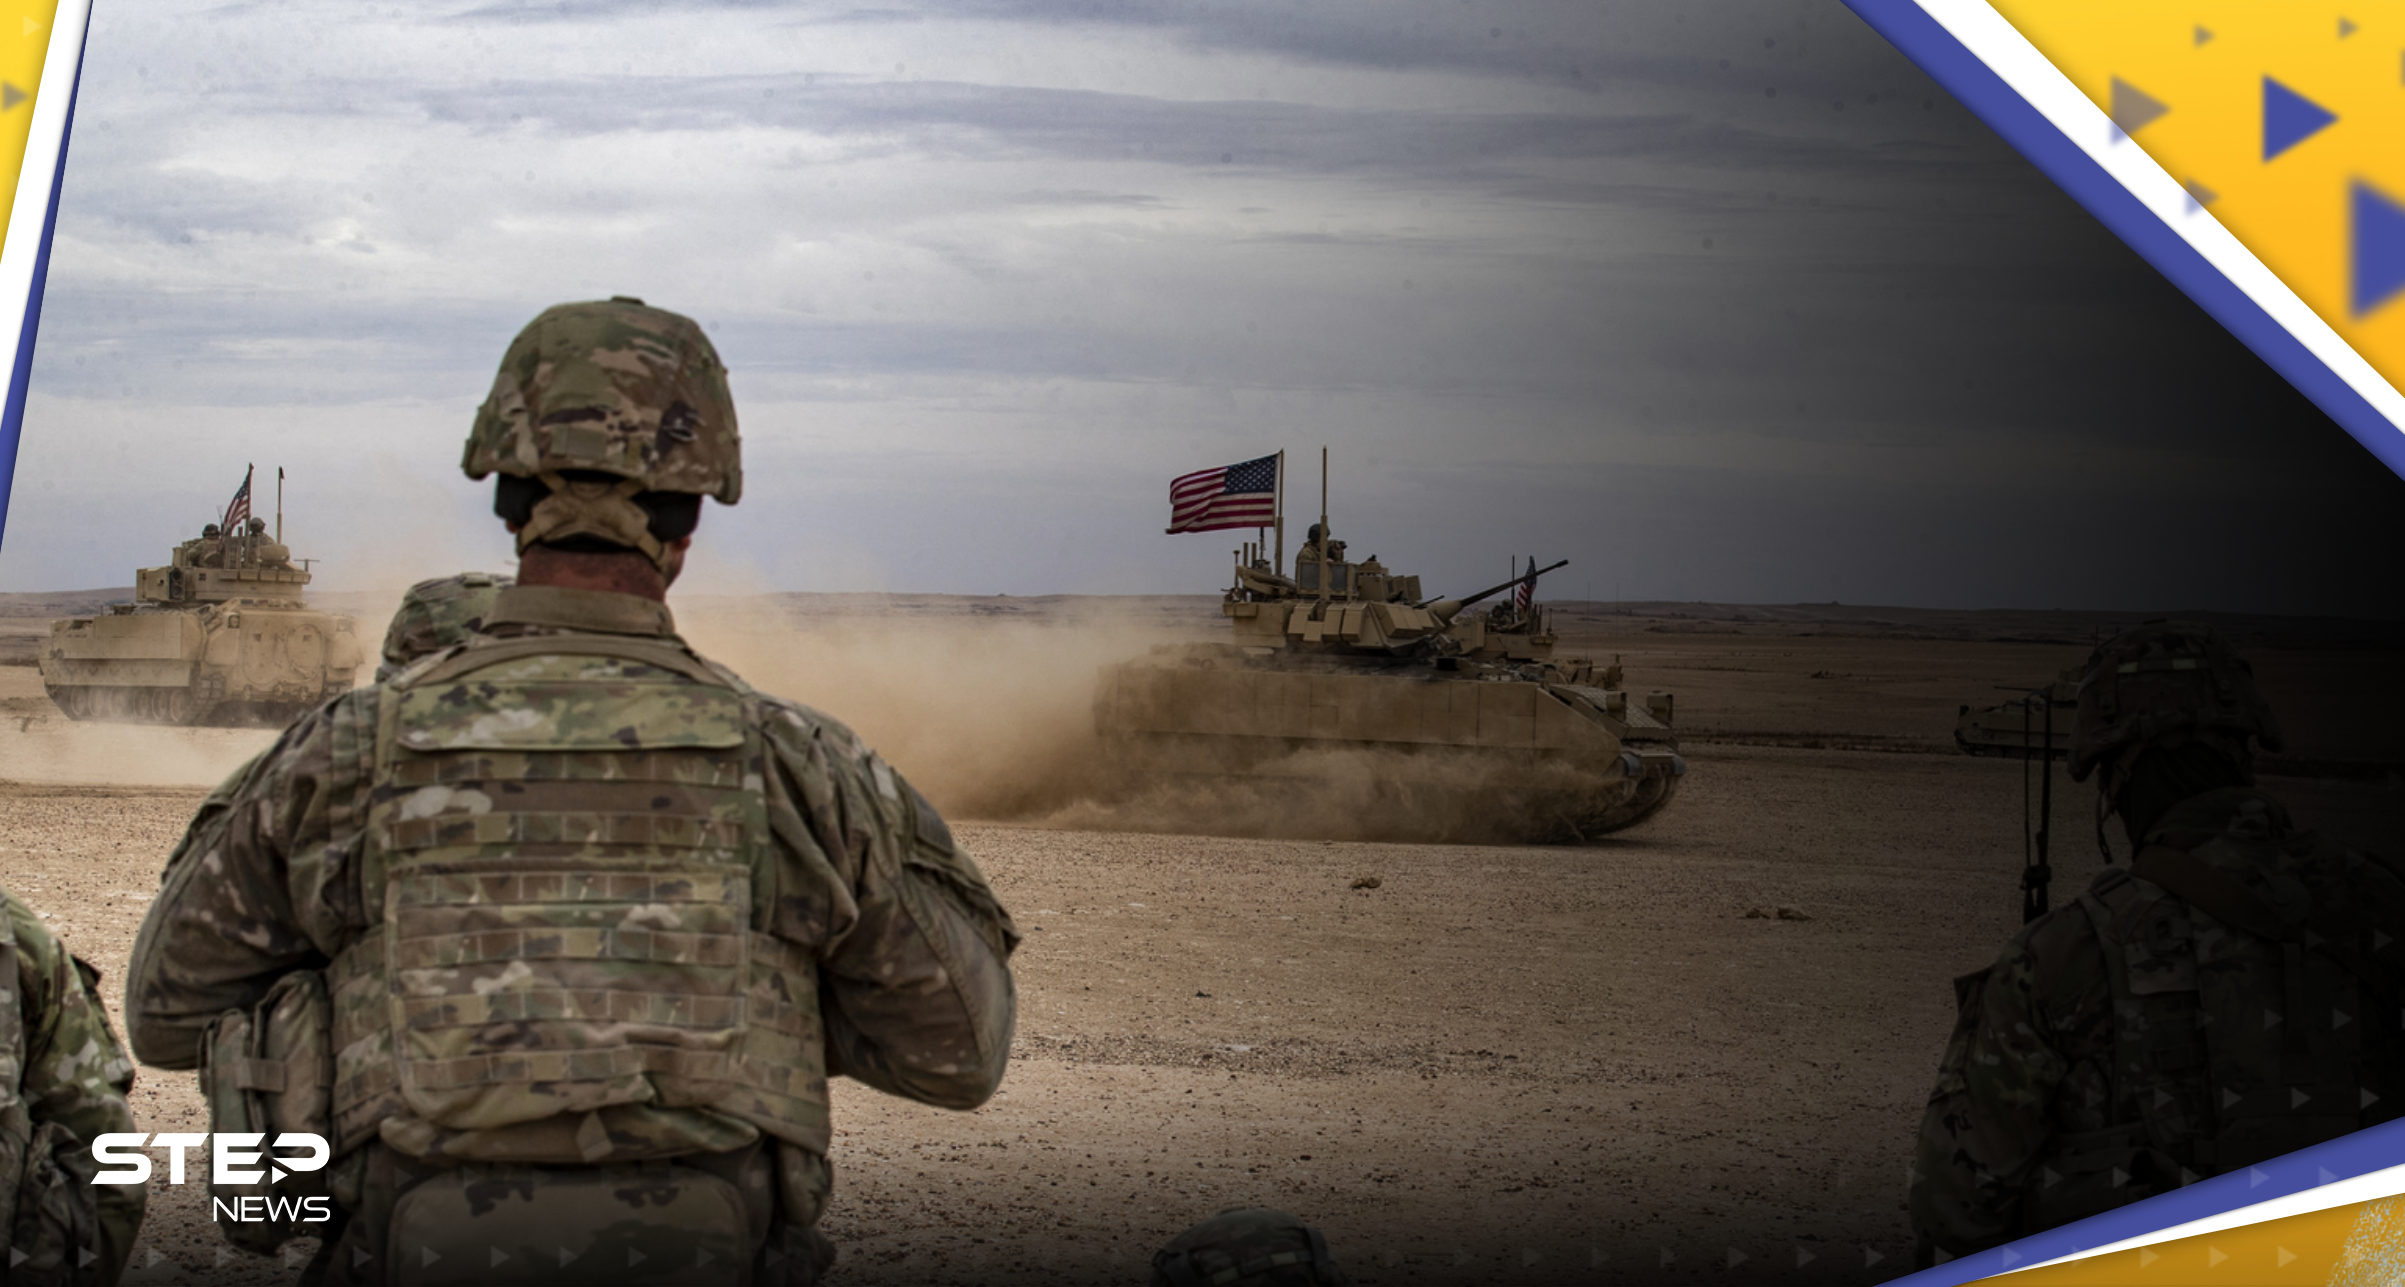 القيادة العسكرية المركزية الأمريكية تعلن اعتقال قيادي "بارز" في تنظيم داعش بسوريا 